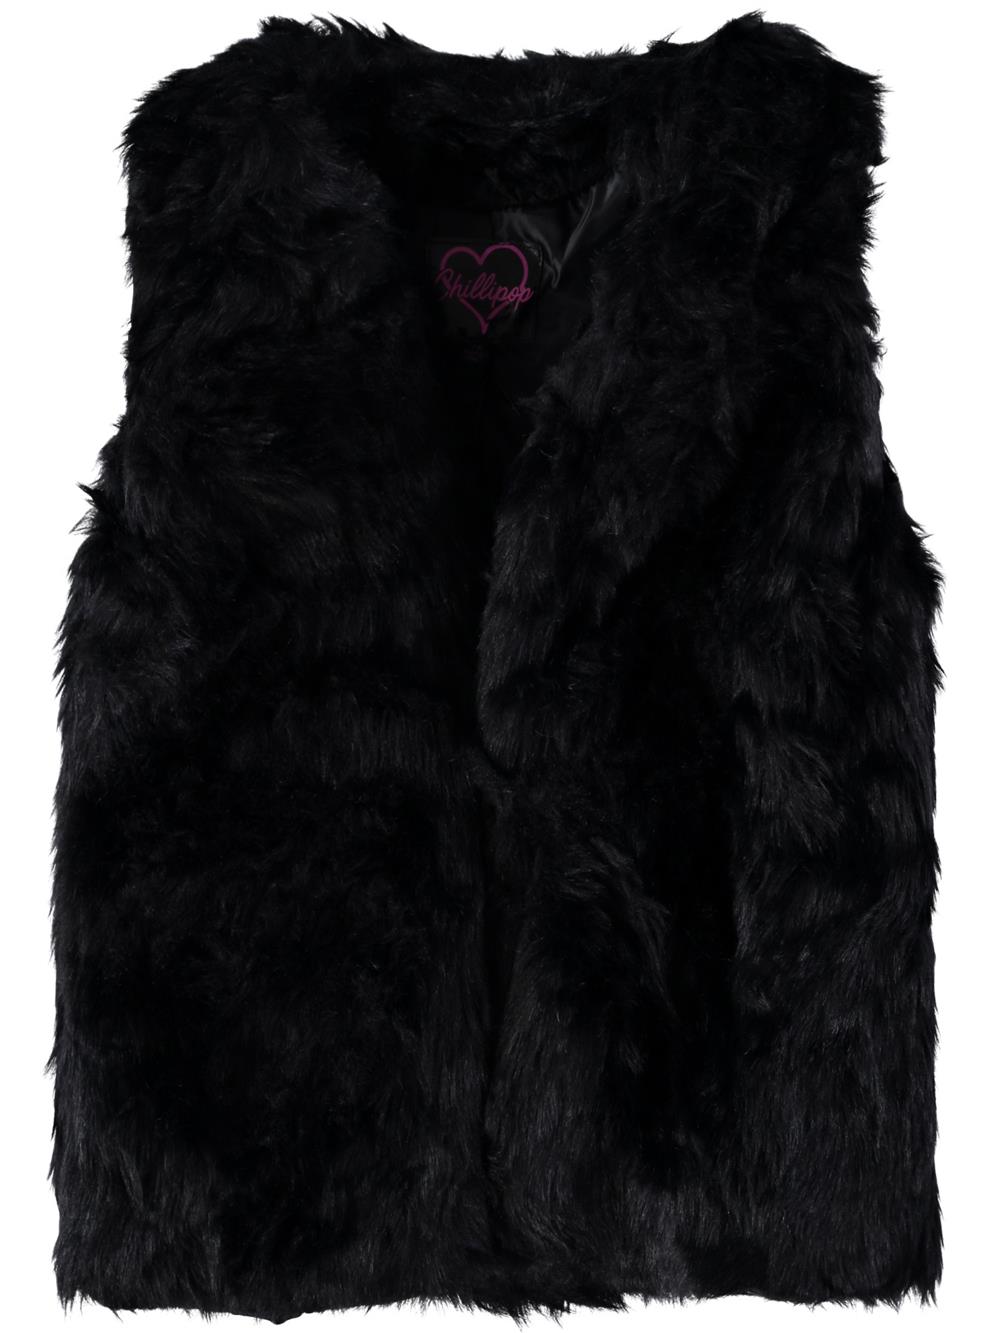 Chillipop Girls 2T-4T Faux Fur Vest